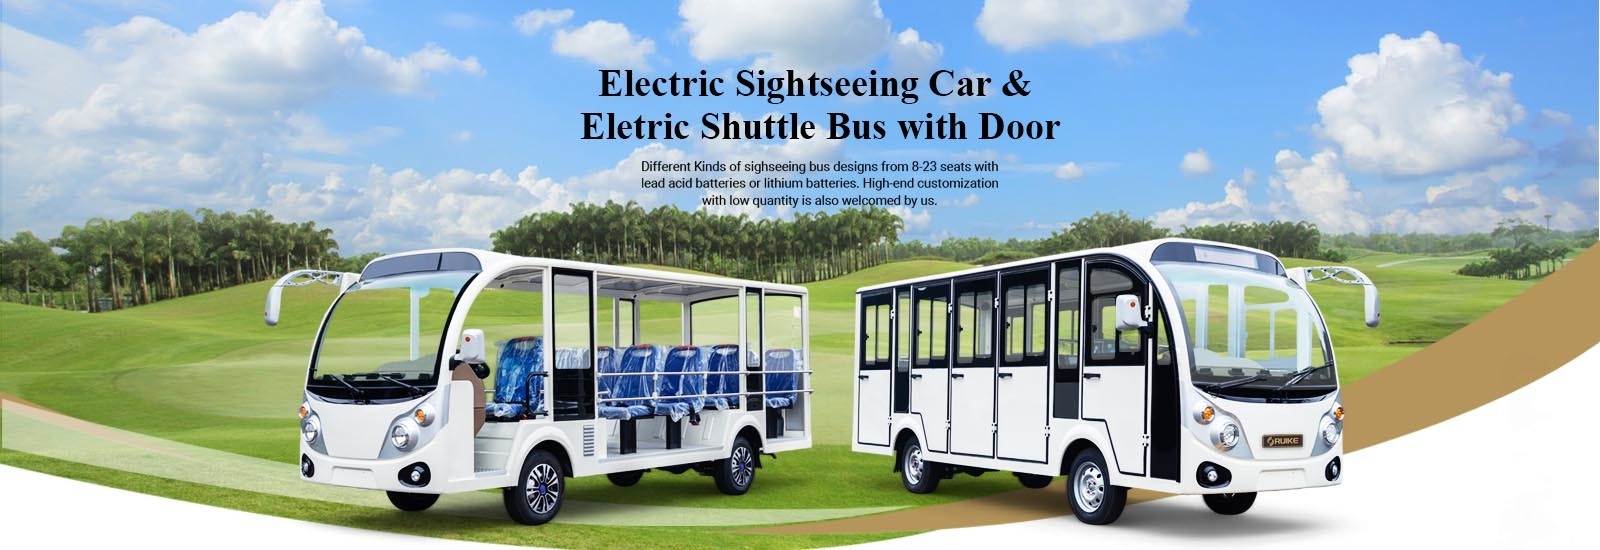 Elektrik Shuttle otobüs